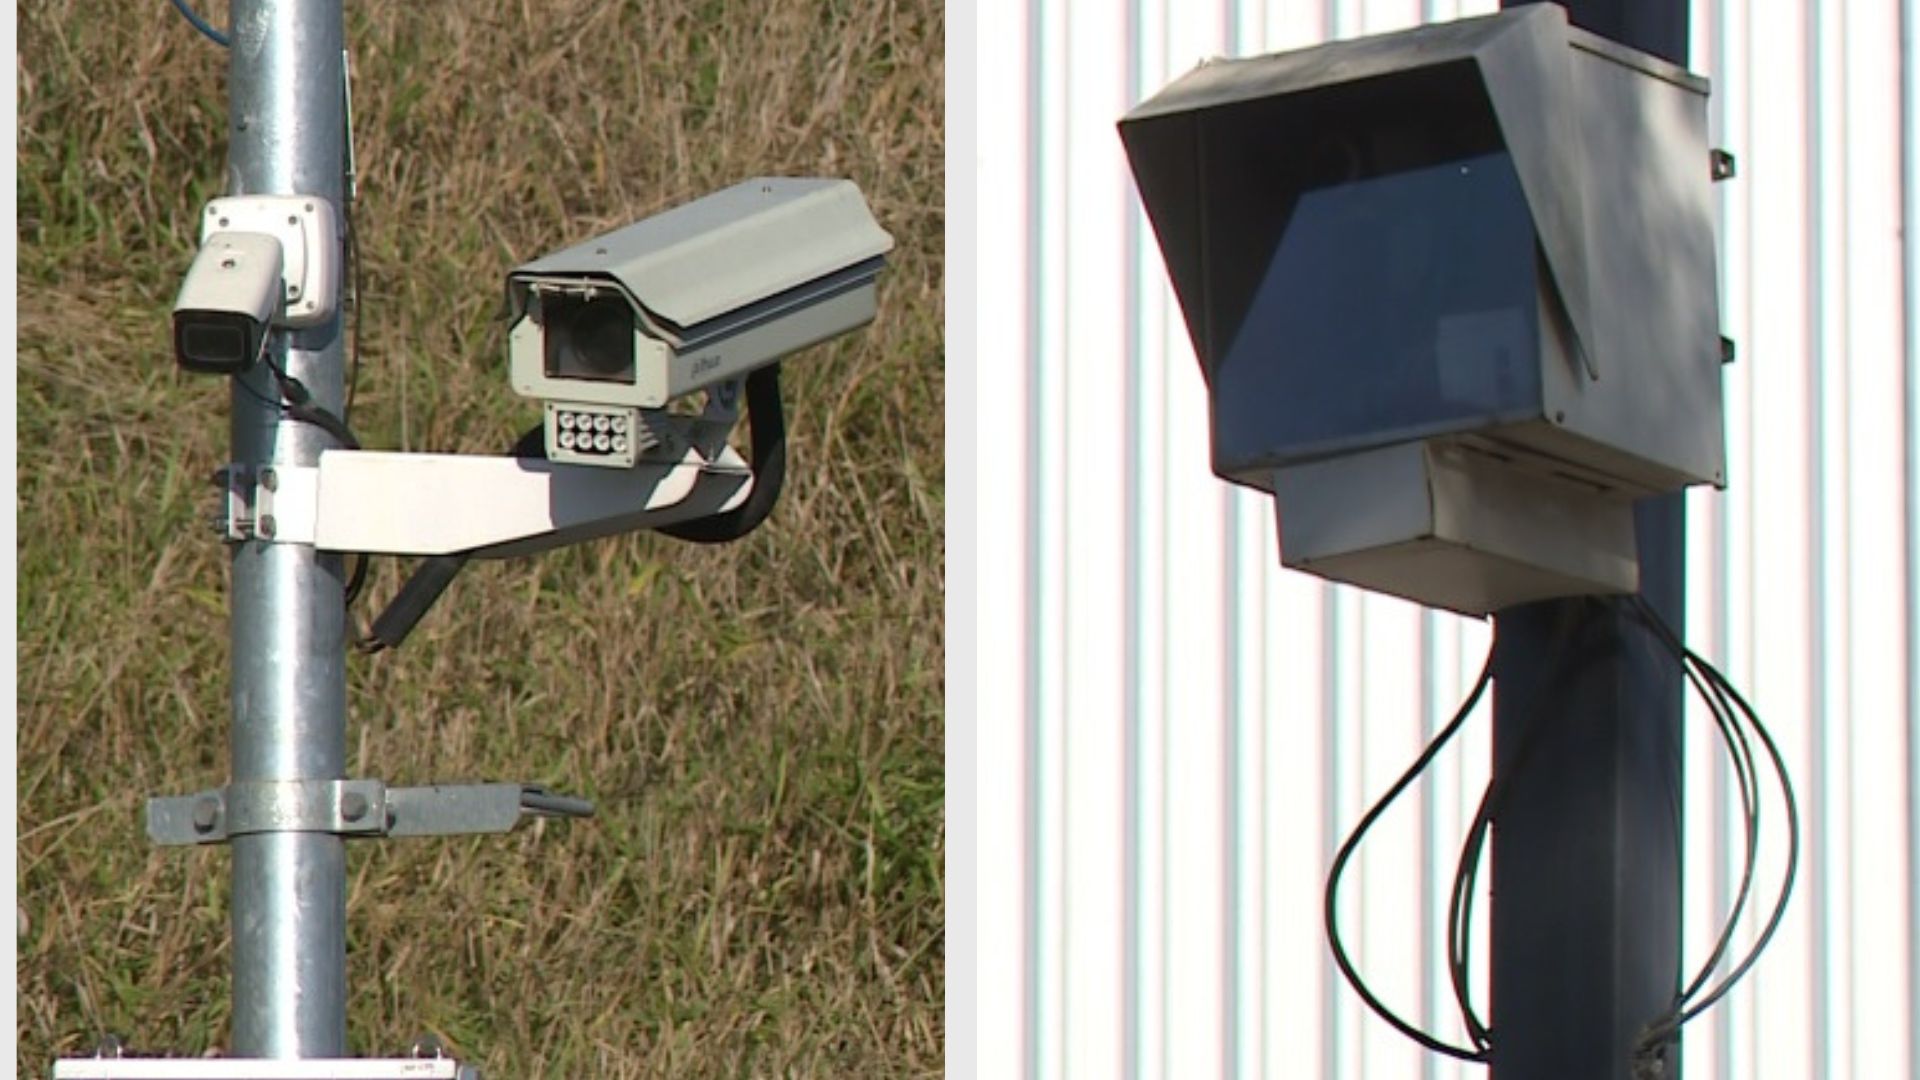 Texto aprovado pela Assembleia Legislativa estabelece a implantação de sinalização para indicação de câmeras de videomonitoramento nas vias urbanas e estradas capixabas